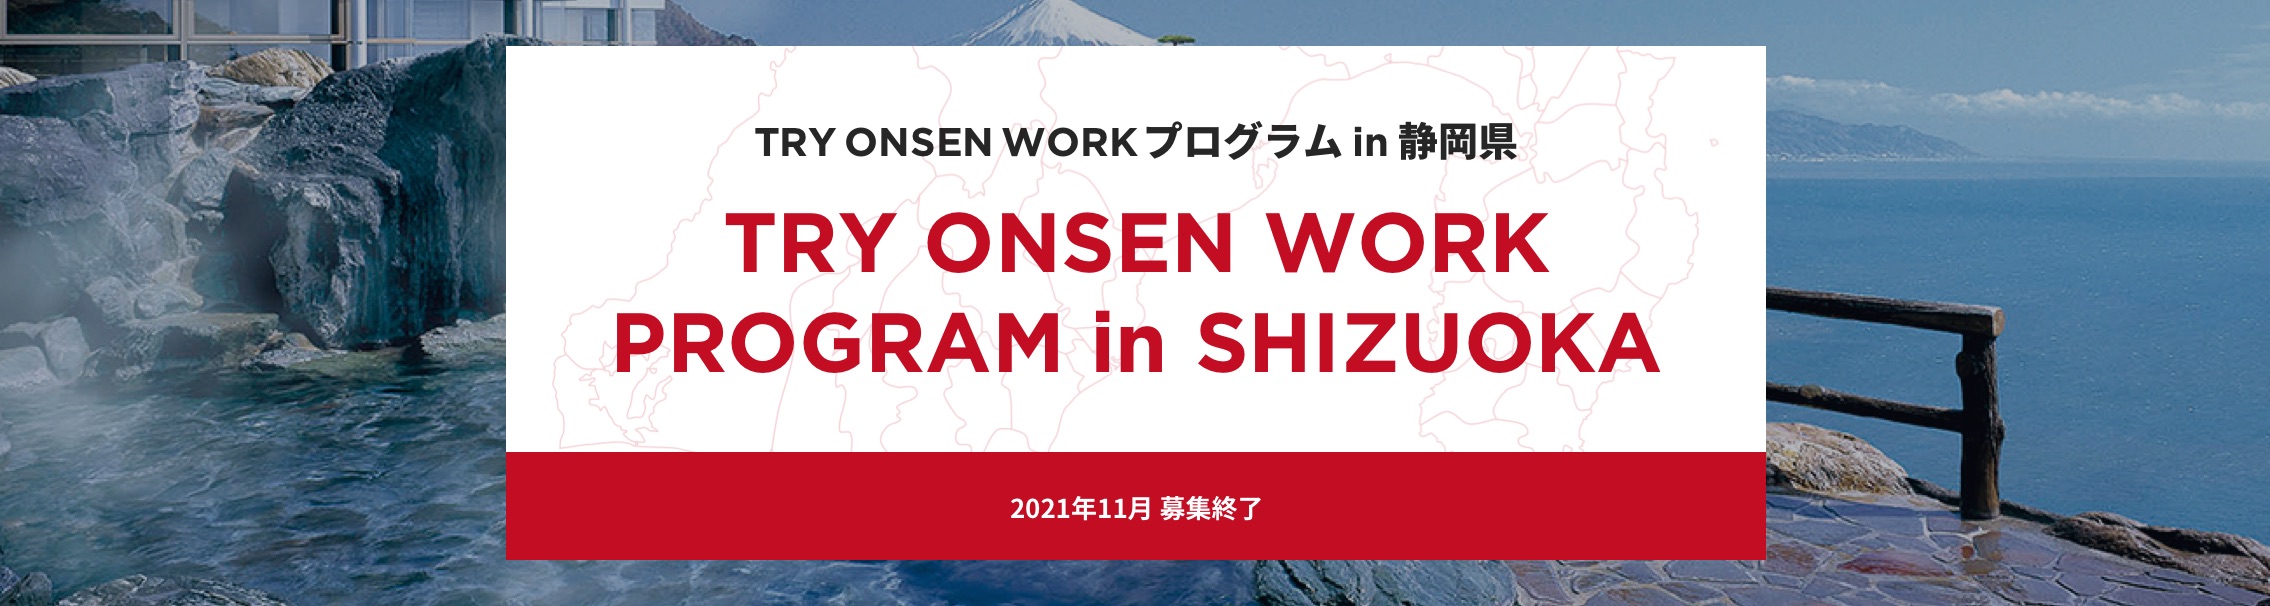 TRY ONSEN WORK プログラム in 静岡県